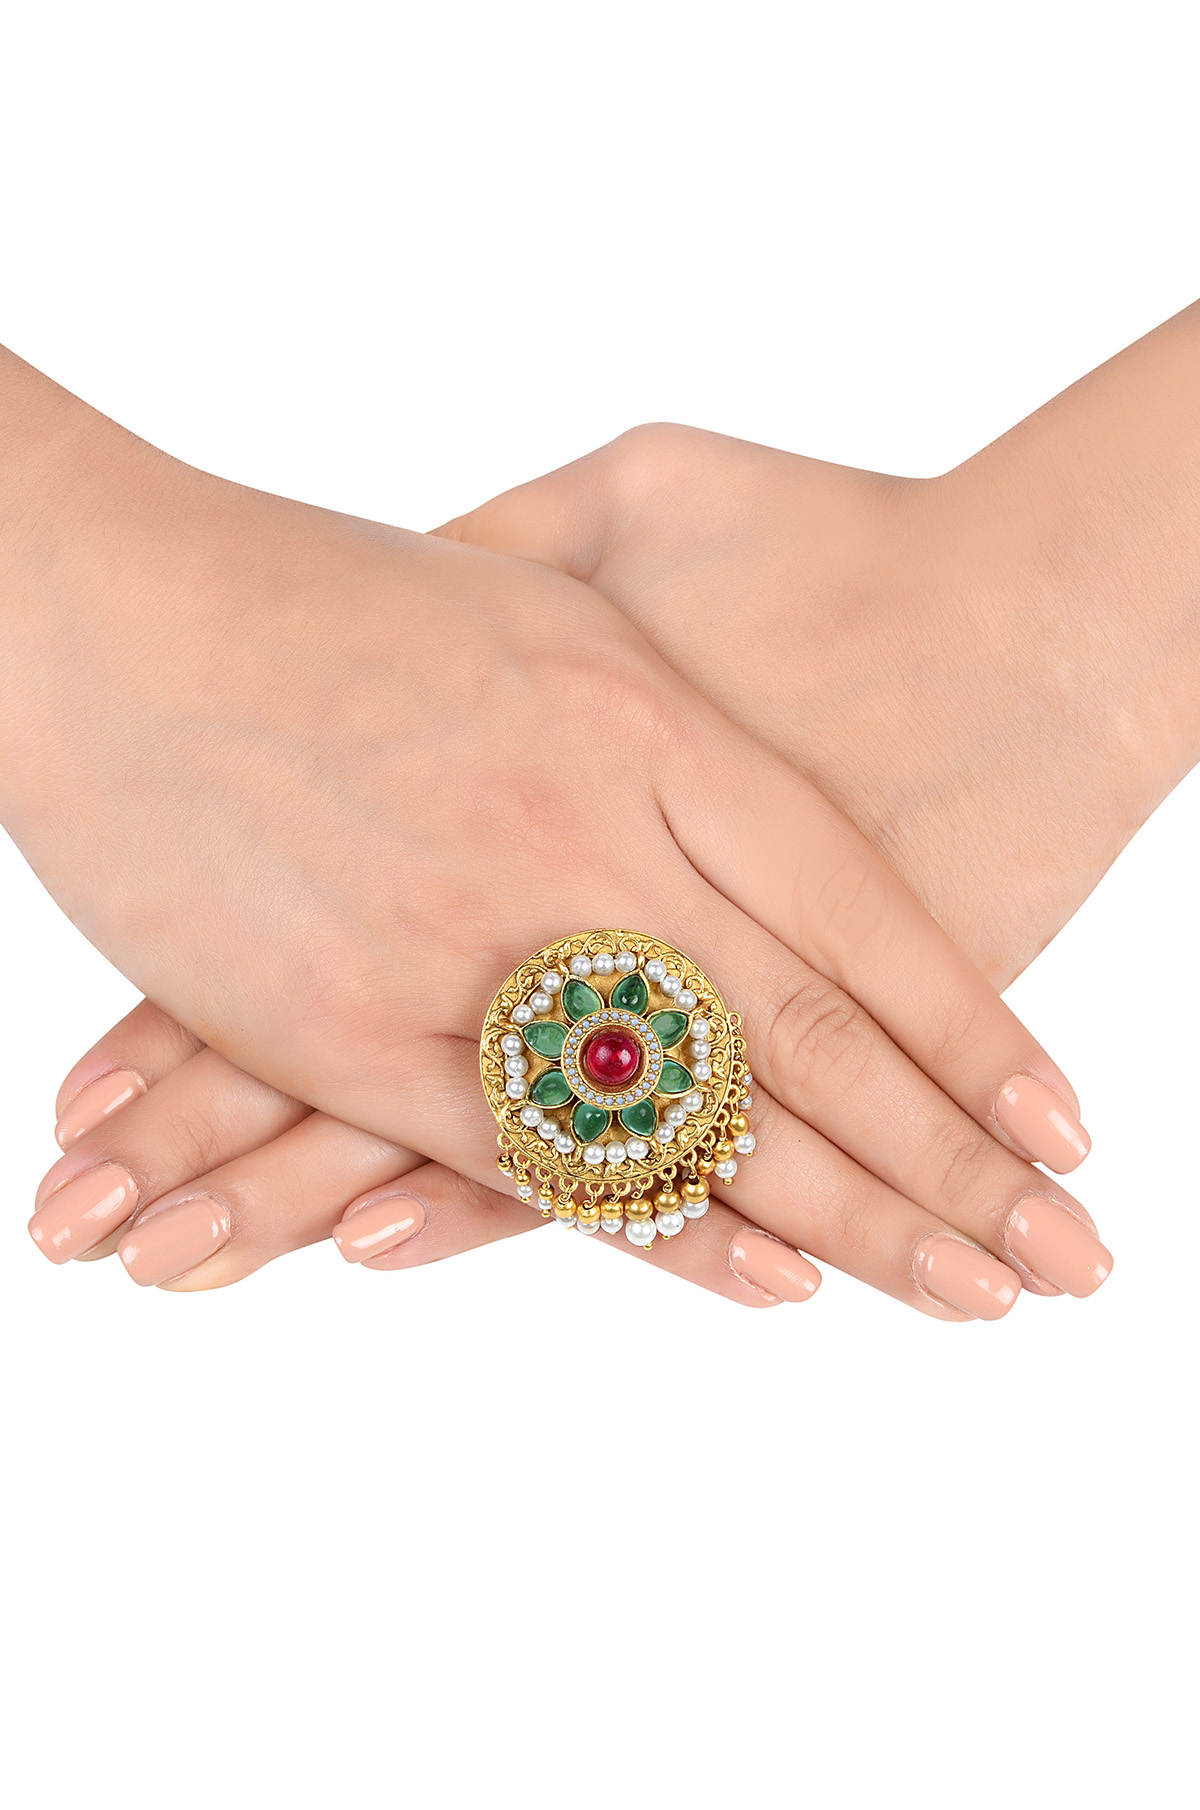 Rajasthani latest gold ring design#2022 - YouTube